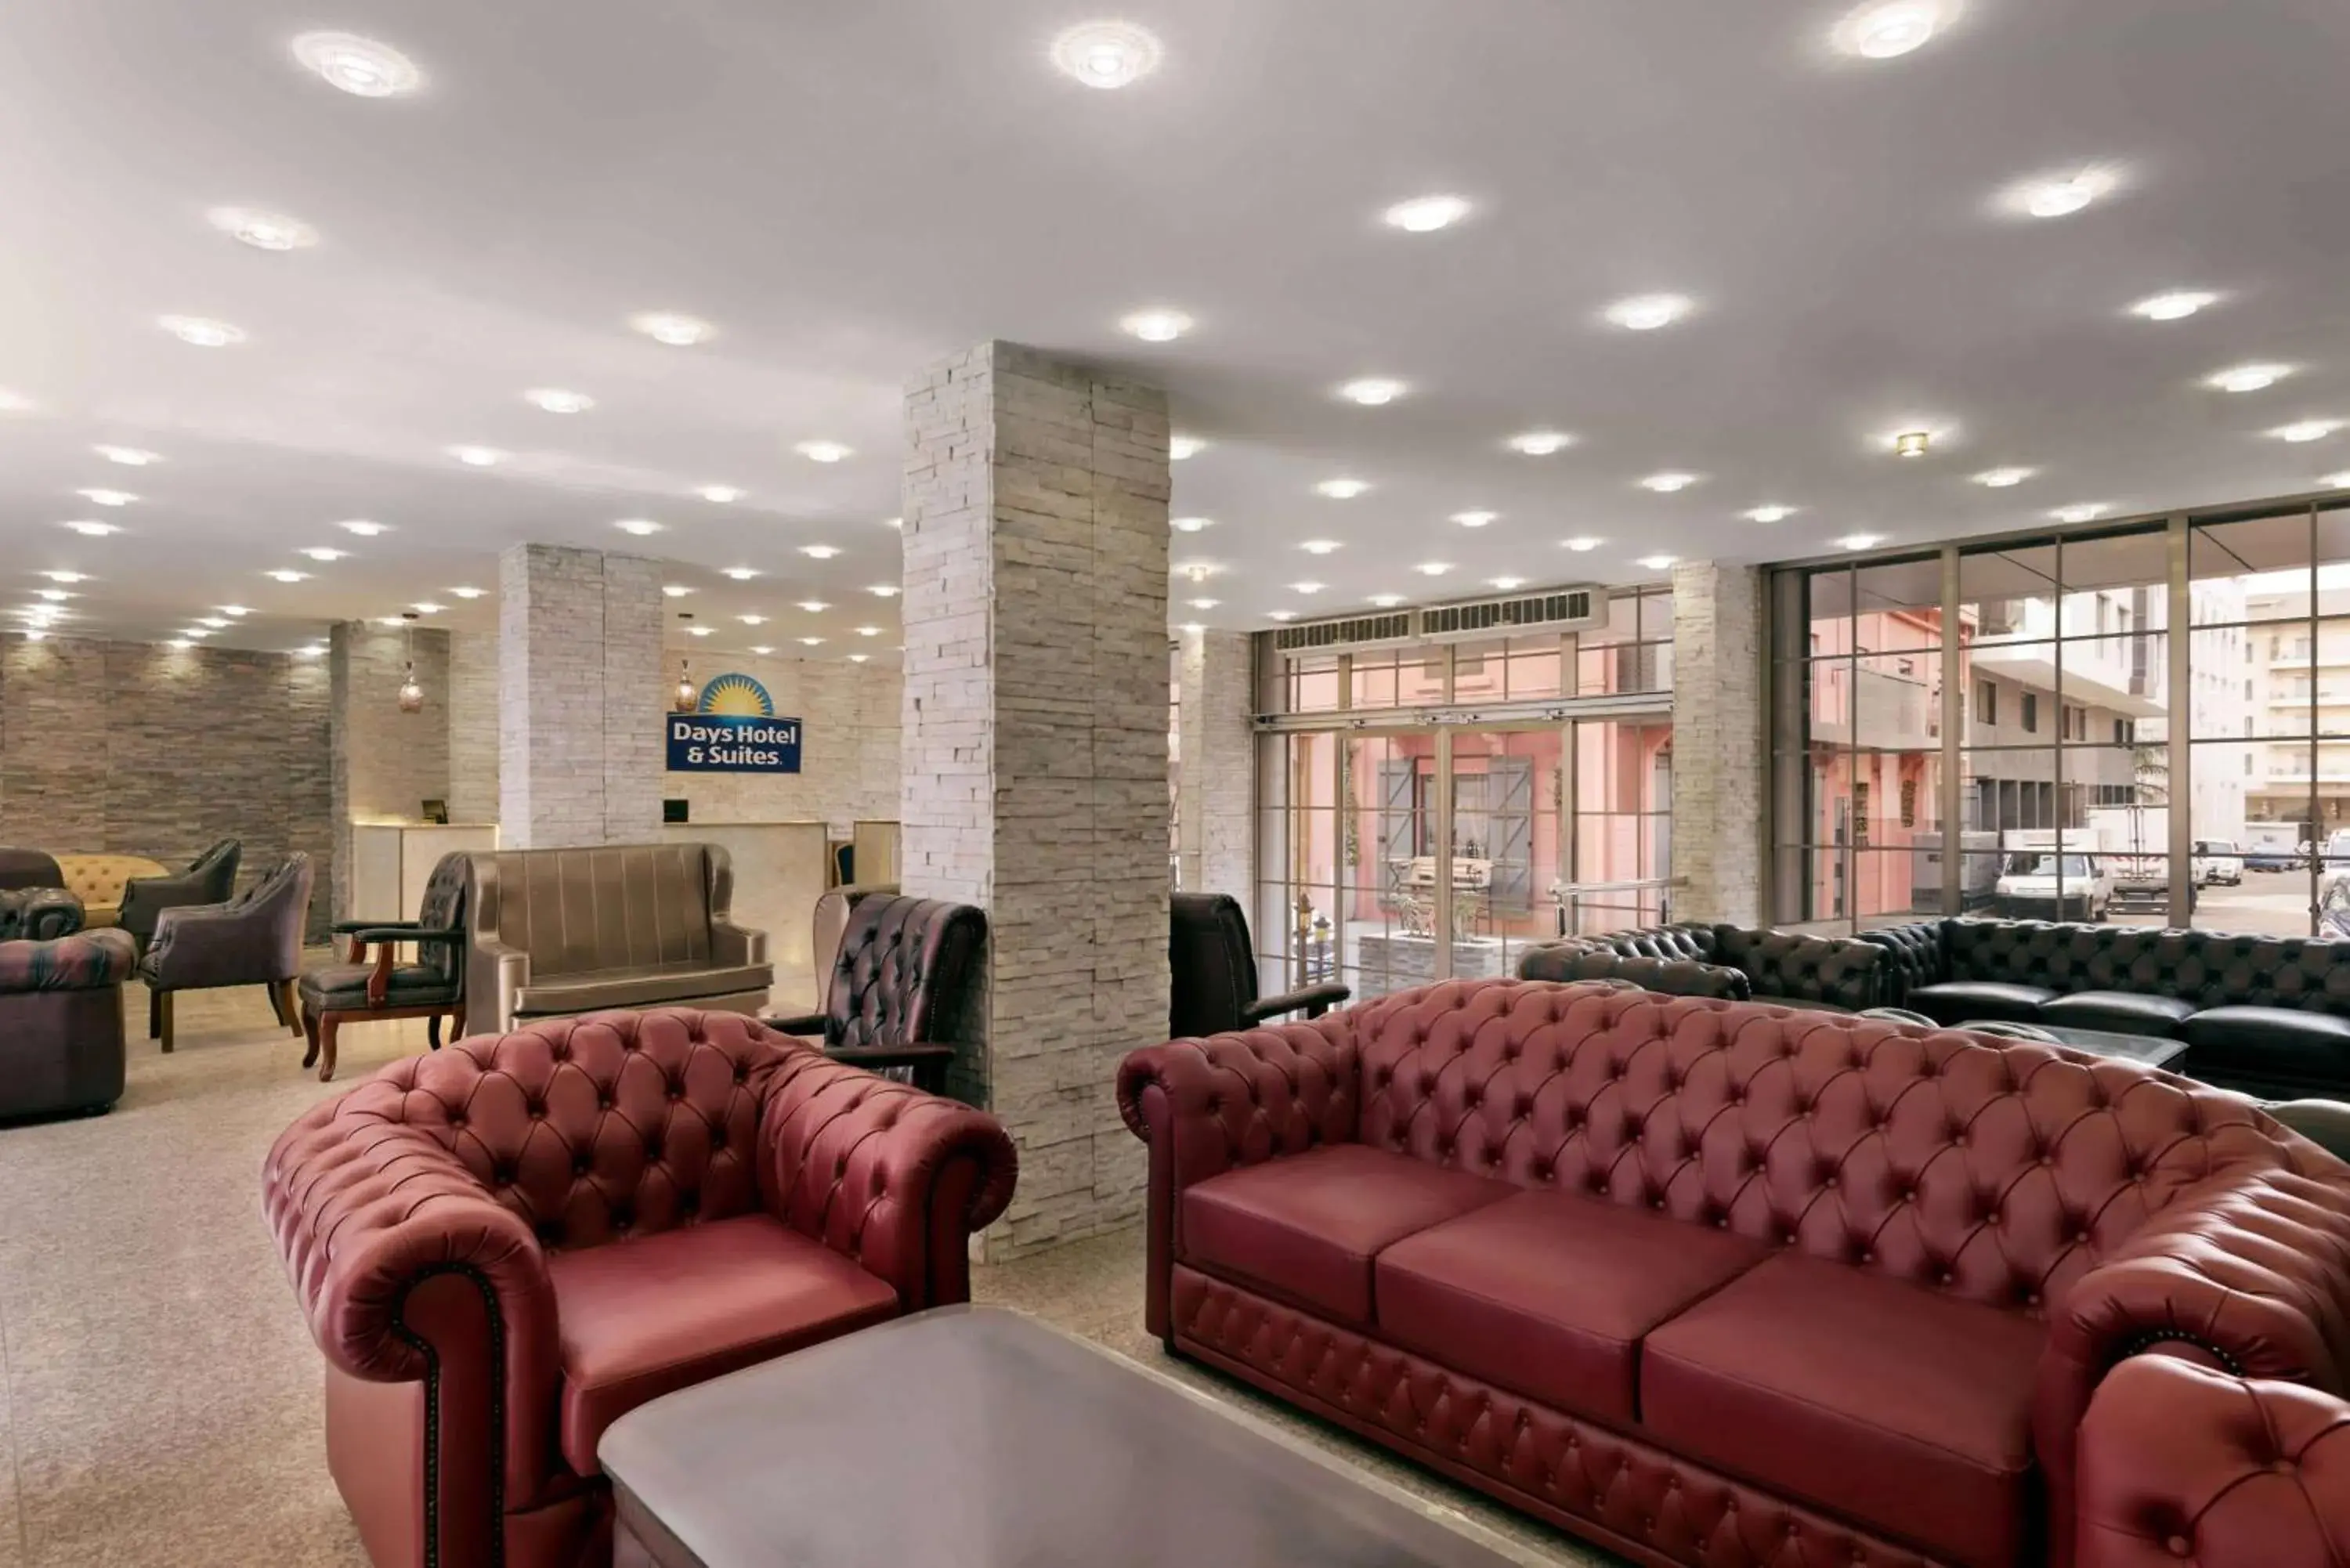 Lobby or reception, Lobby/Reception in Days Hotel & Suites by Wyndham Dakar